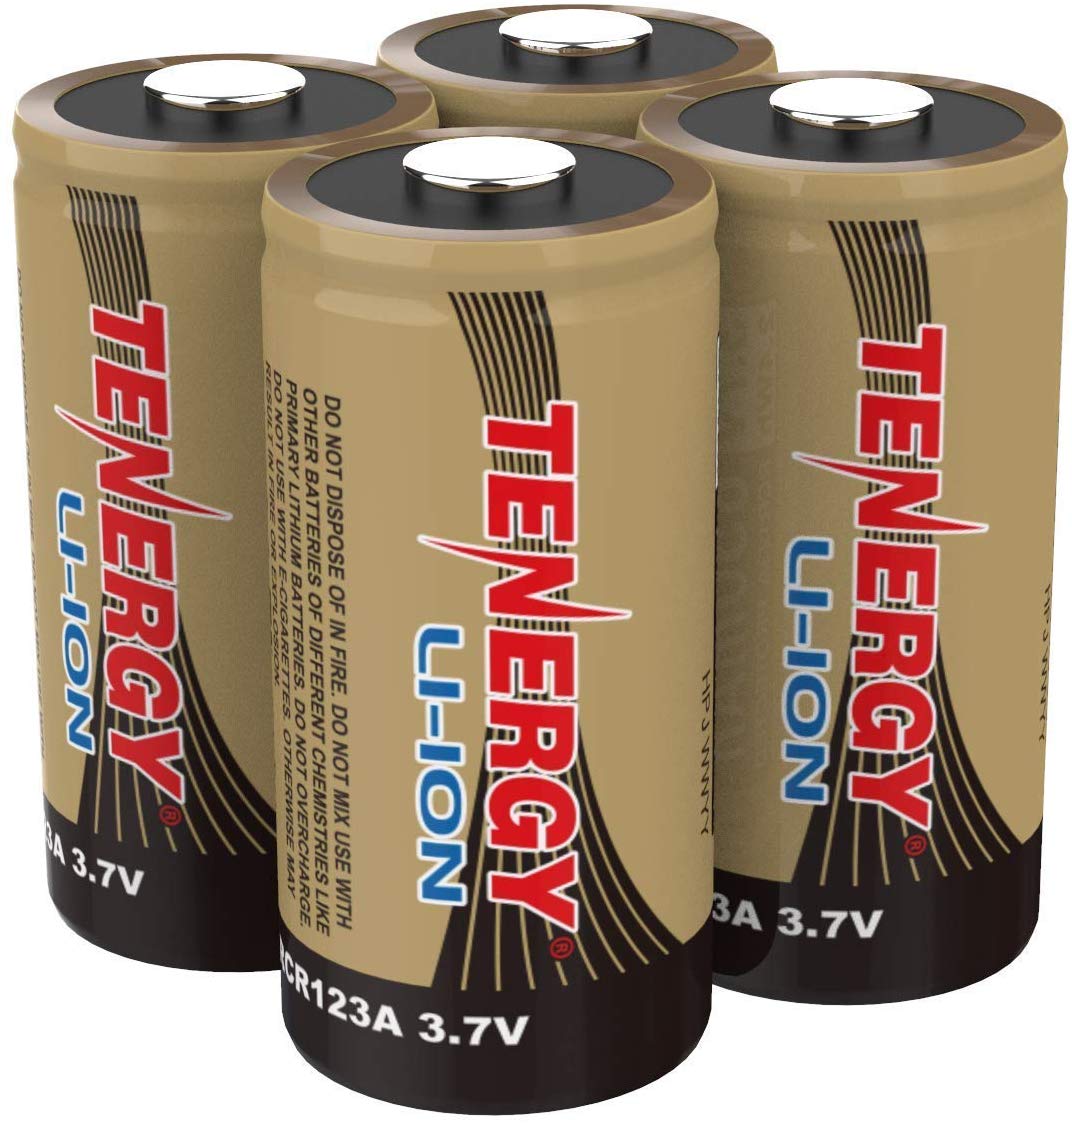 Tenergy baterías recargables de ion de litio de 3.7V  (VMC3030) 650mAh RCR123A UL certificación UN paquete de 4 unidades